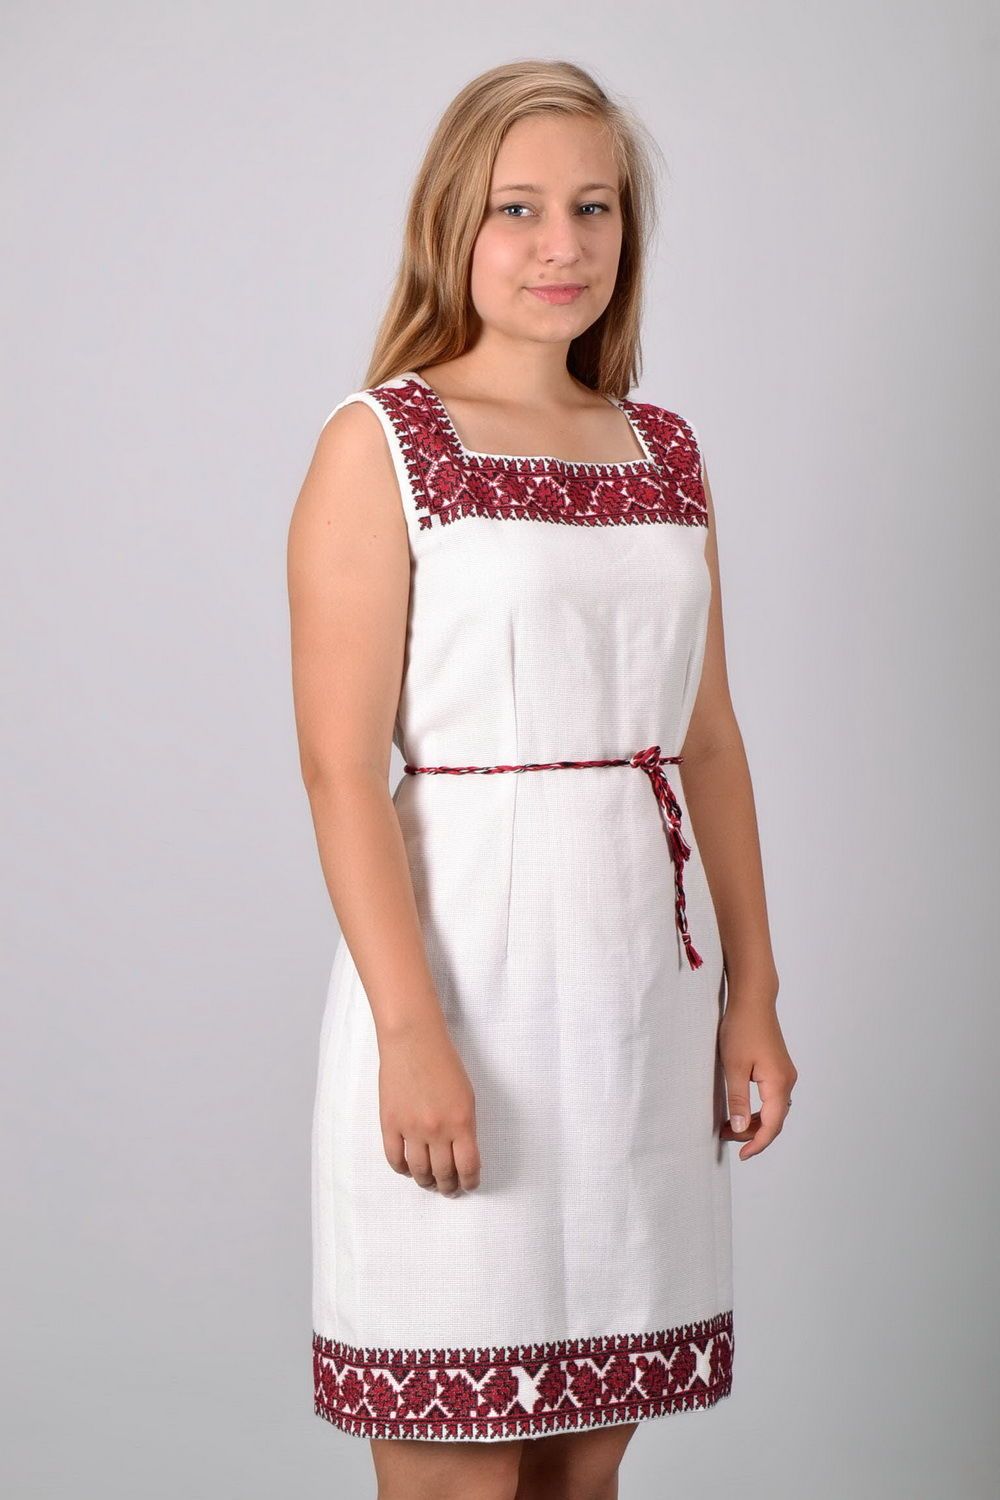 Cross stitched dress photo 5